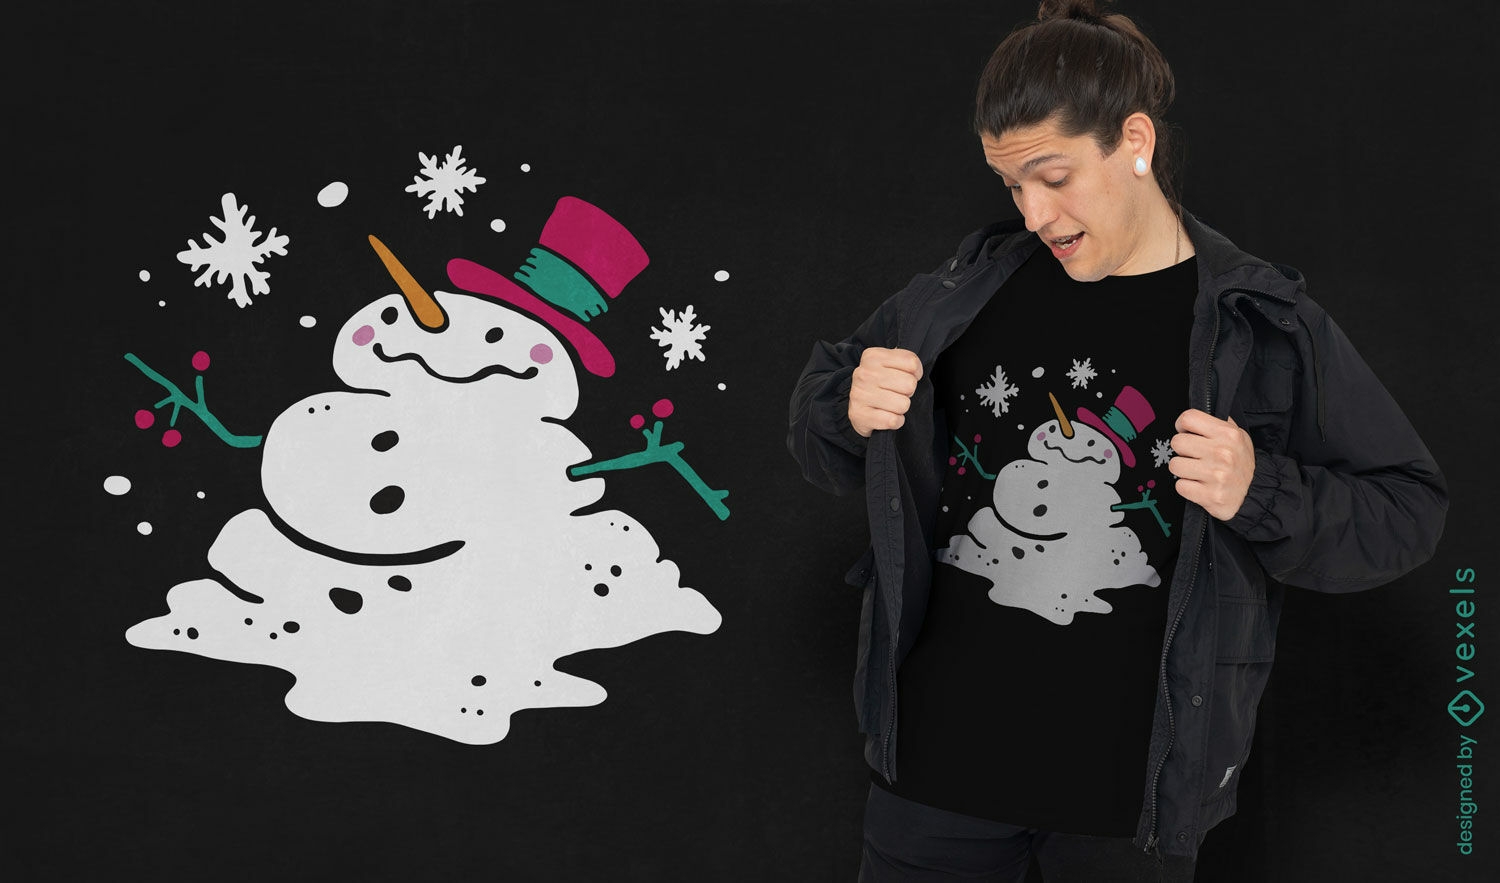 Design alegre de camiseta com boneco de neve